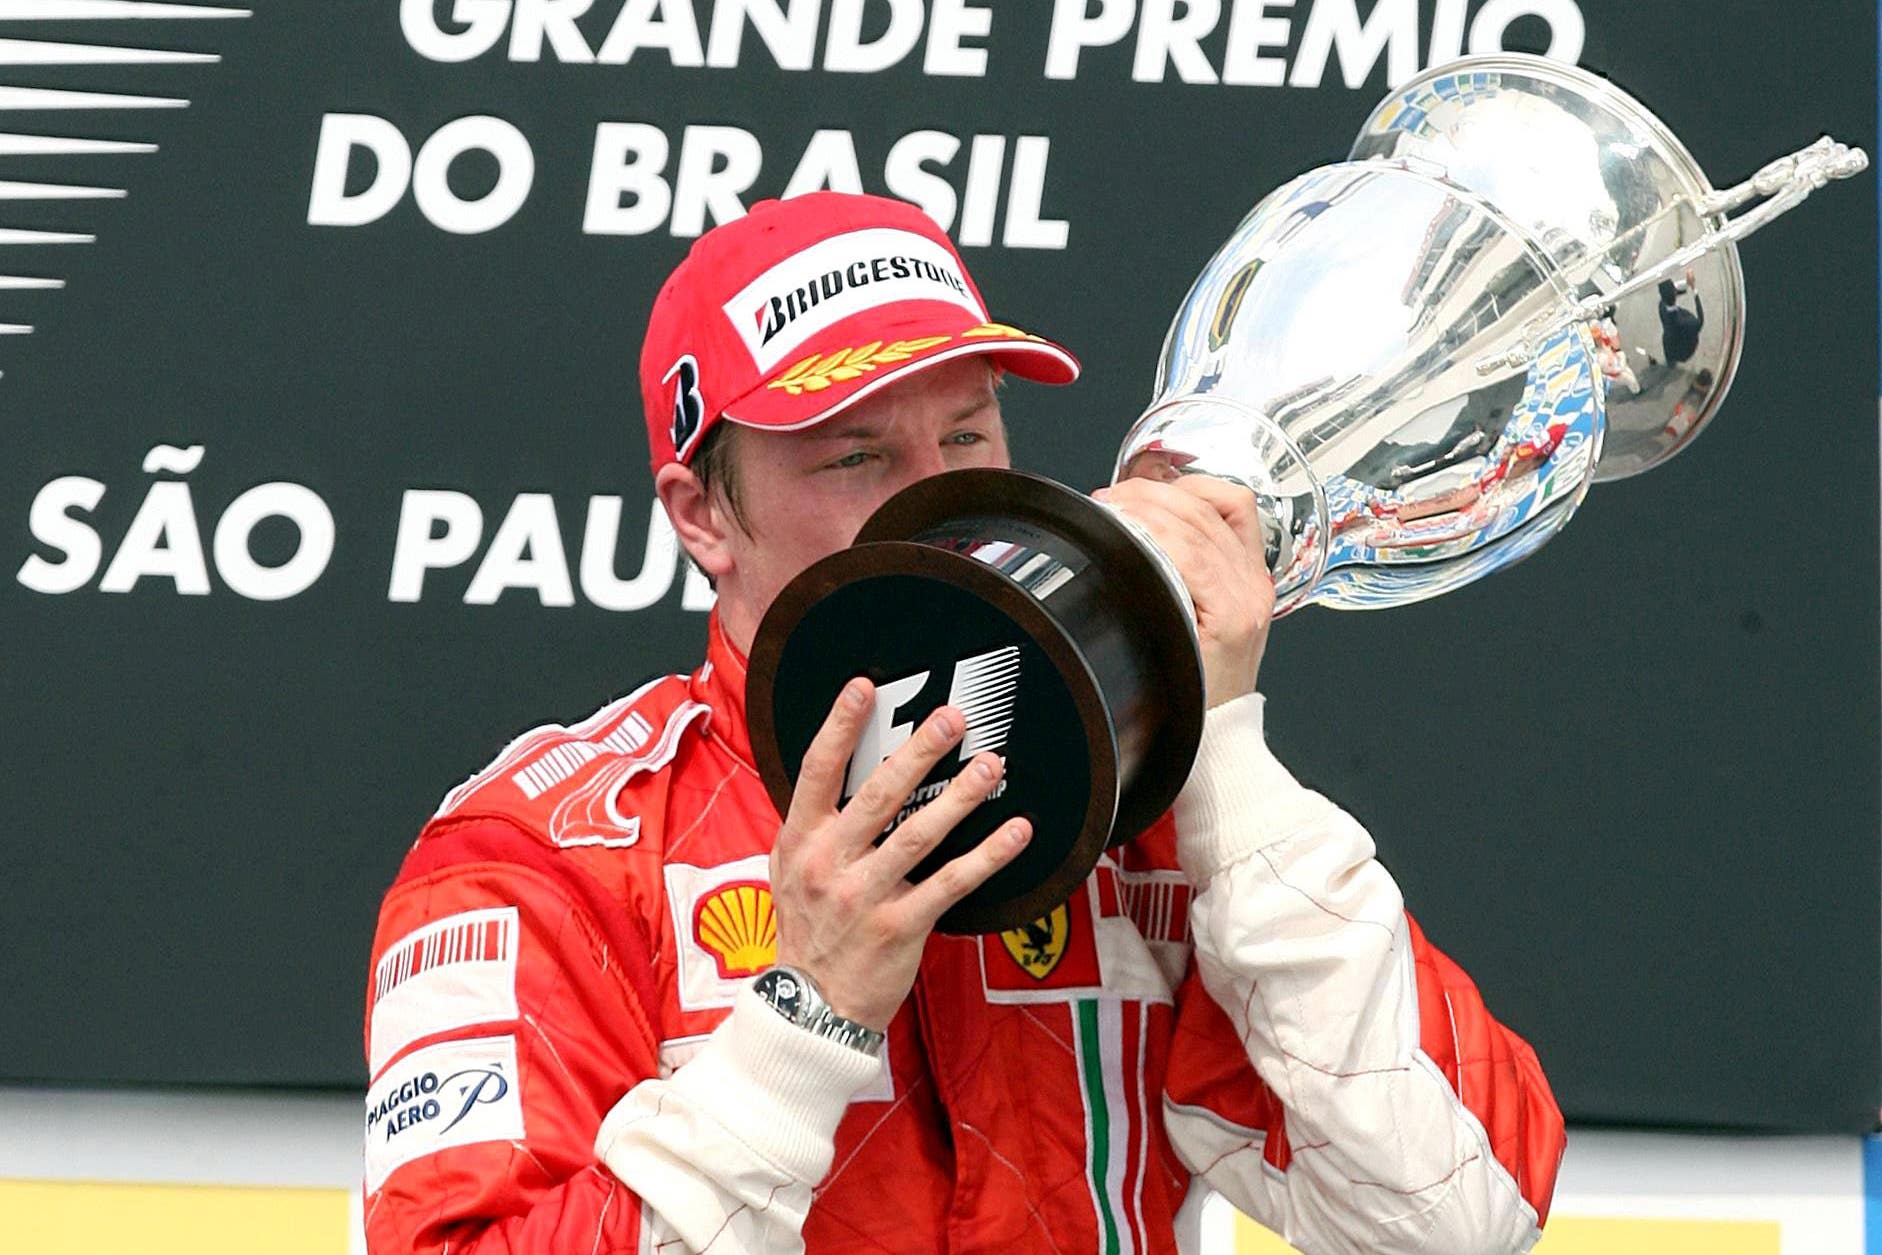 Finland’s Kimi Raikkonen celebrates his victory following the Brazilian Grand Prix at Interlagos (Martin Rickett/PA